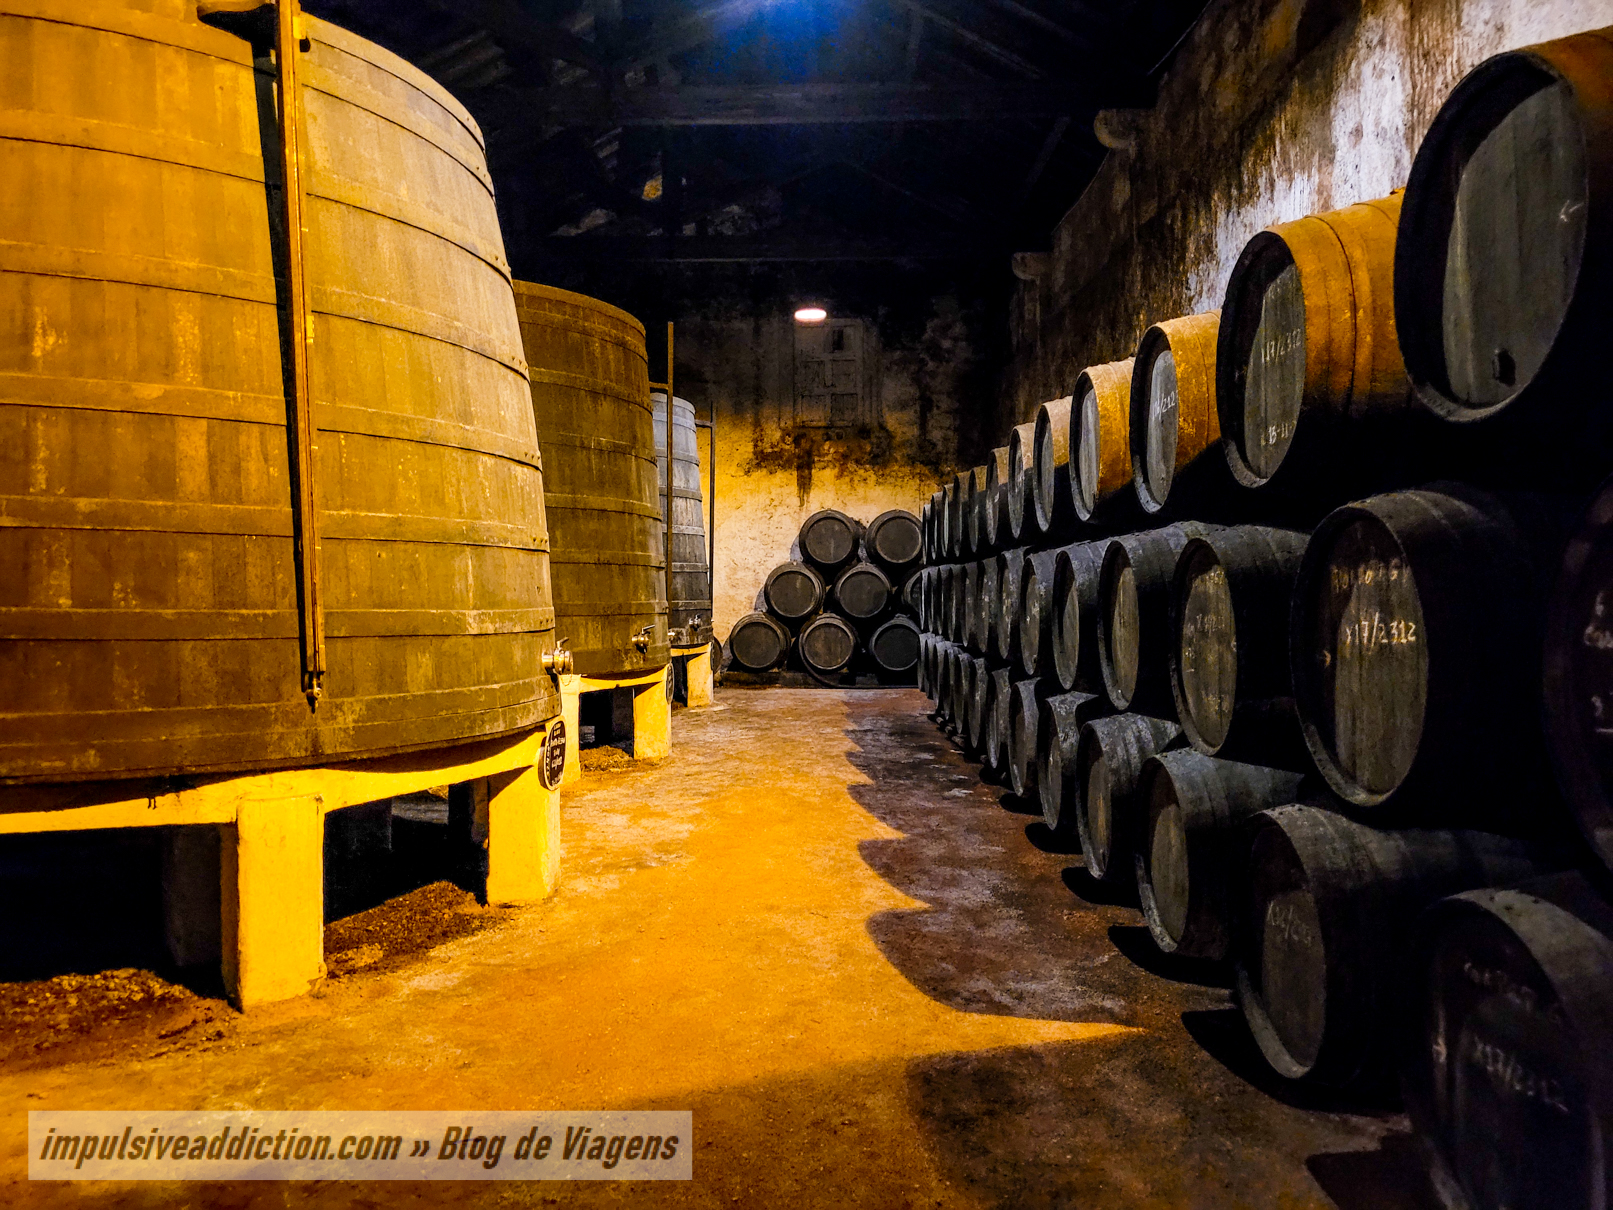 Visita às Caves de Vinho do Porto Ferreira